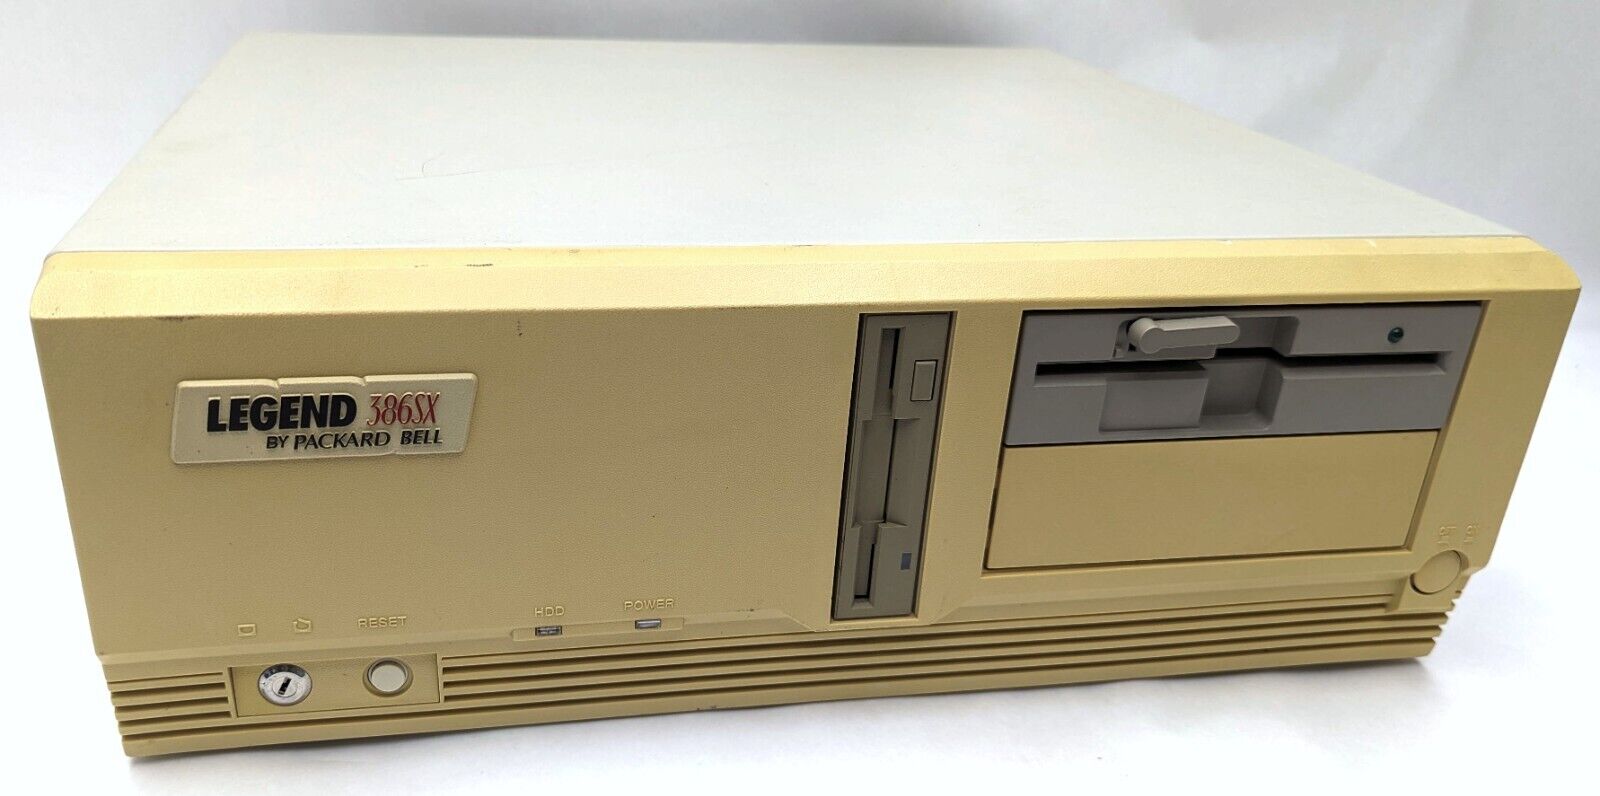 VTG Packard Bell 386SX Legend Desktop 80386SX 16MHz 640KB Base / 384KB Ext. RAM